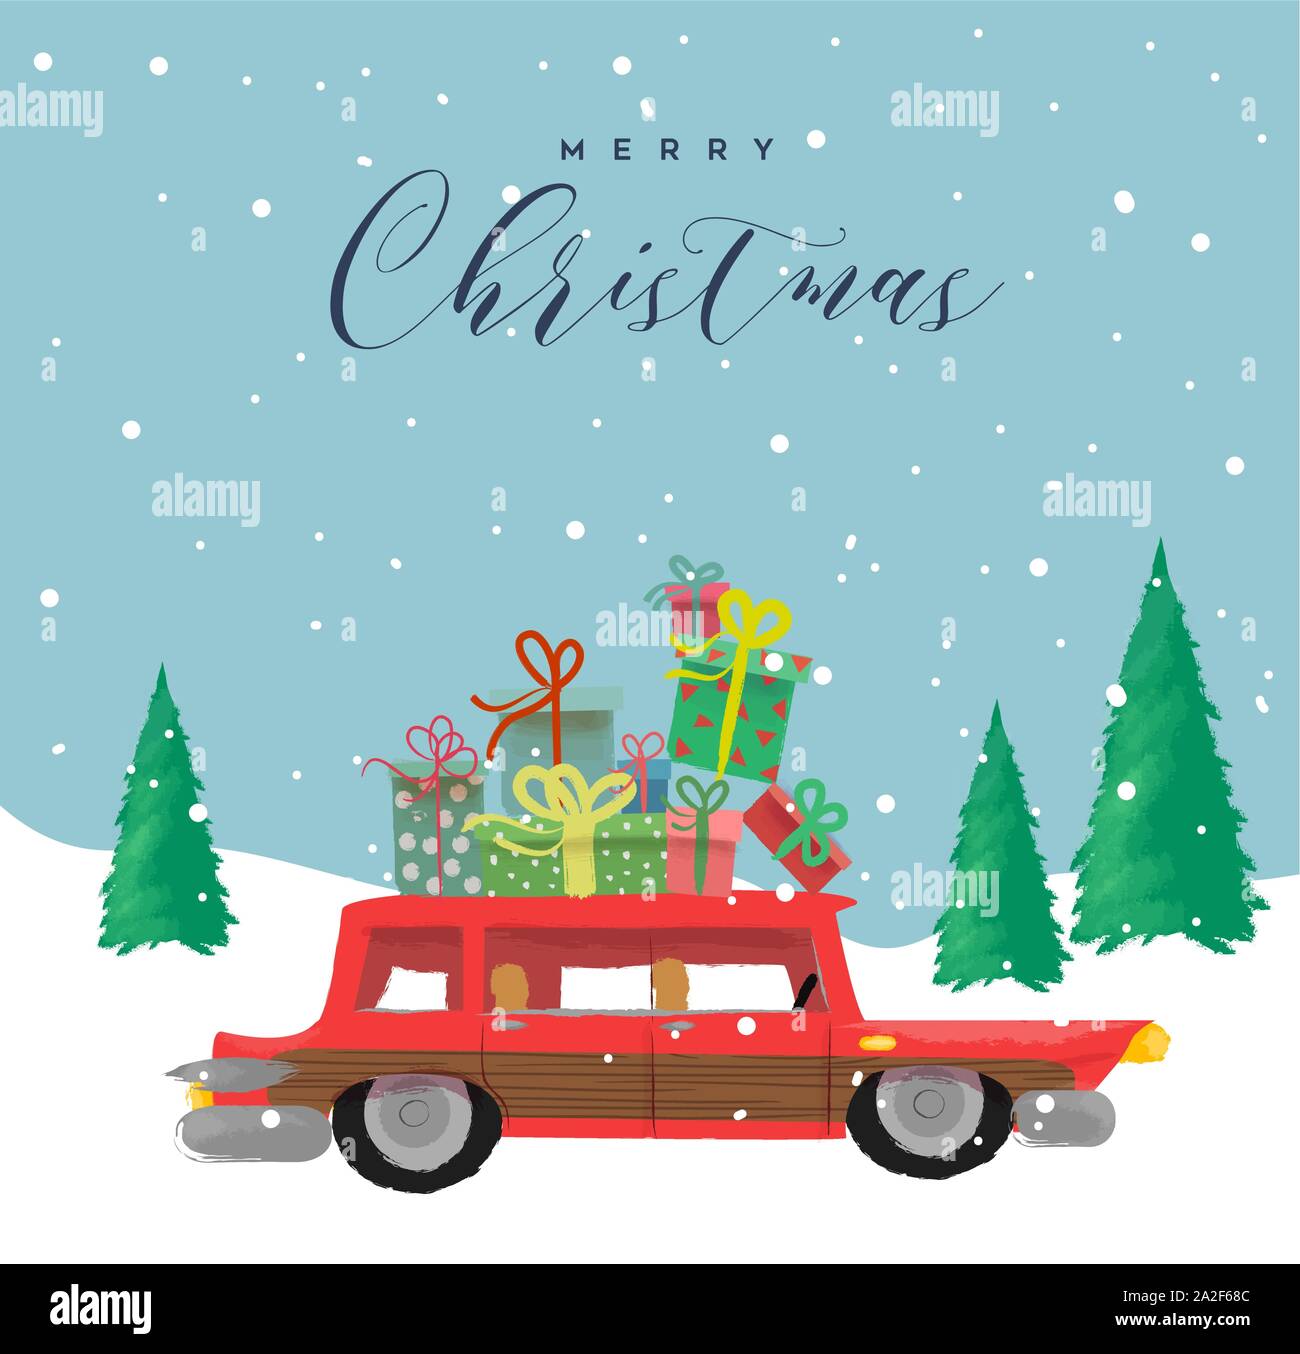 Frohe Weihnachten Grußkarte Abbildung: Lustig Hand gezeichnet retro Auto mit Urlaub Geschenkboxen. Winter scene für festliche xmas event. Stock Vektor